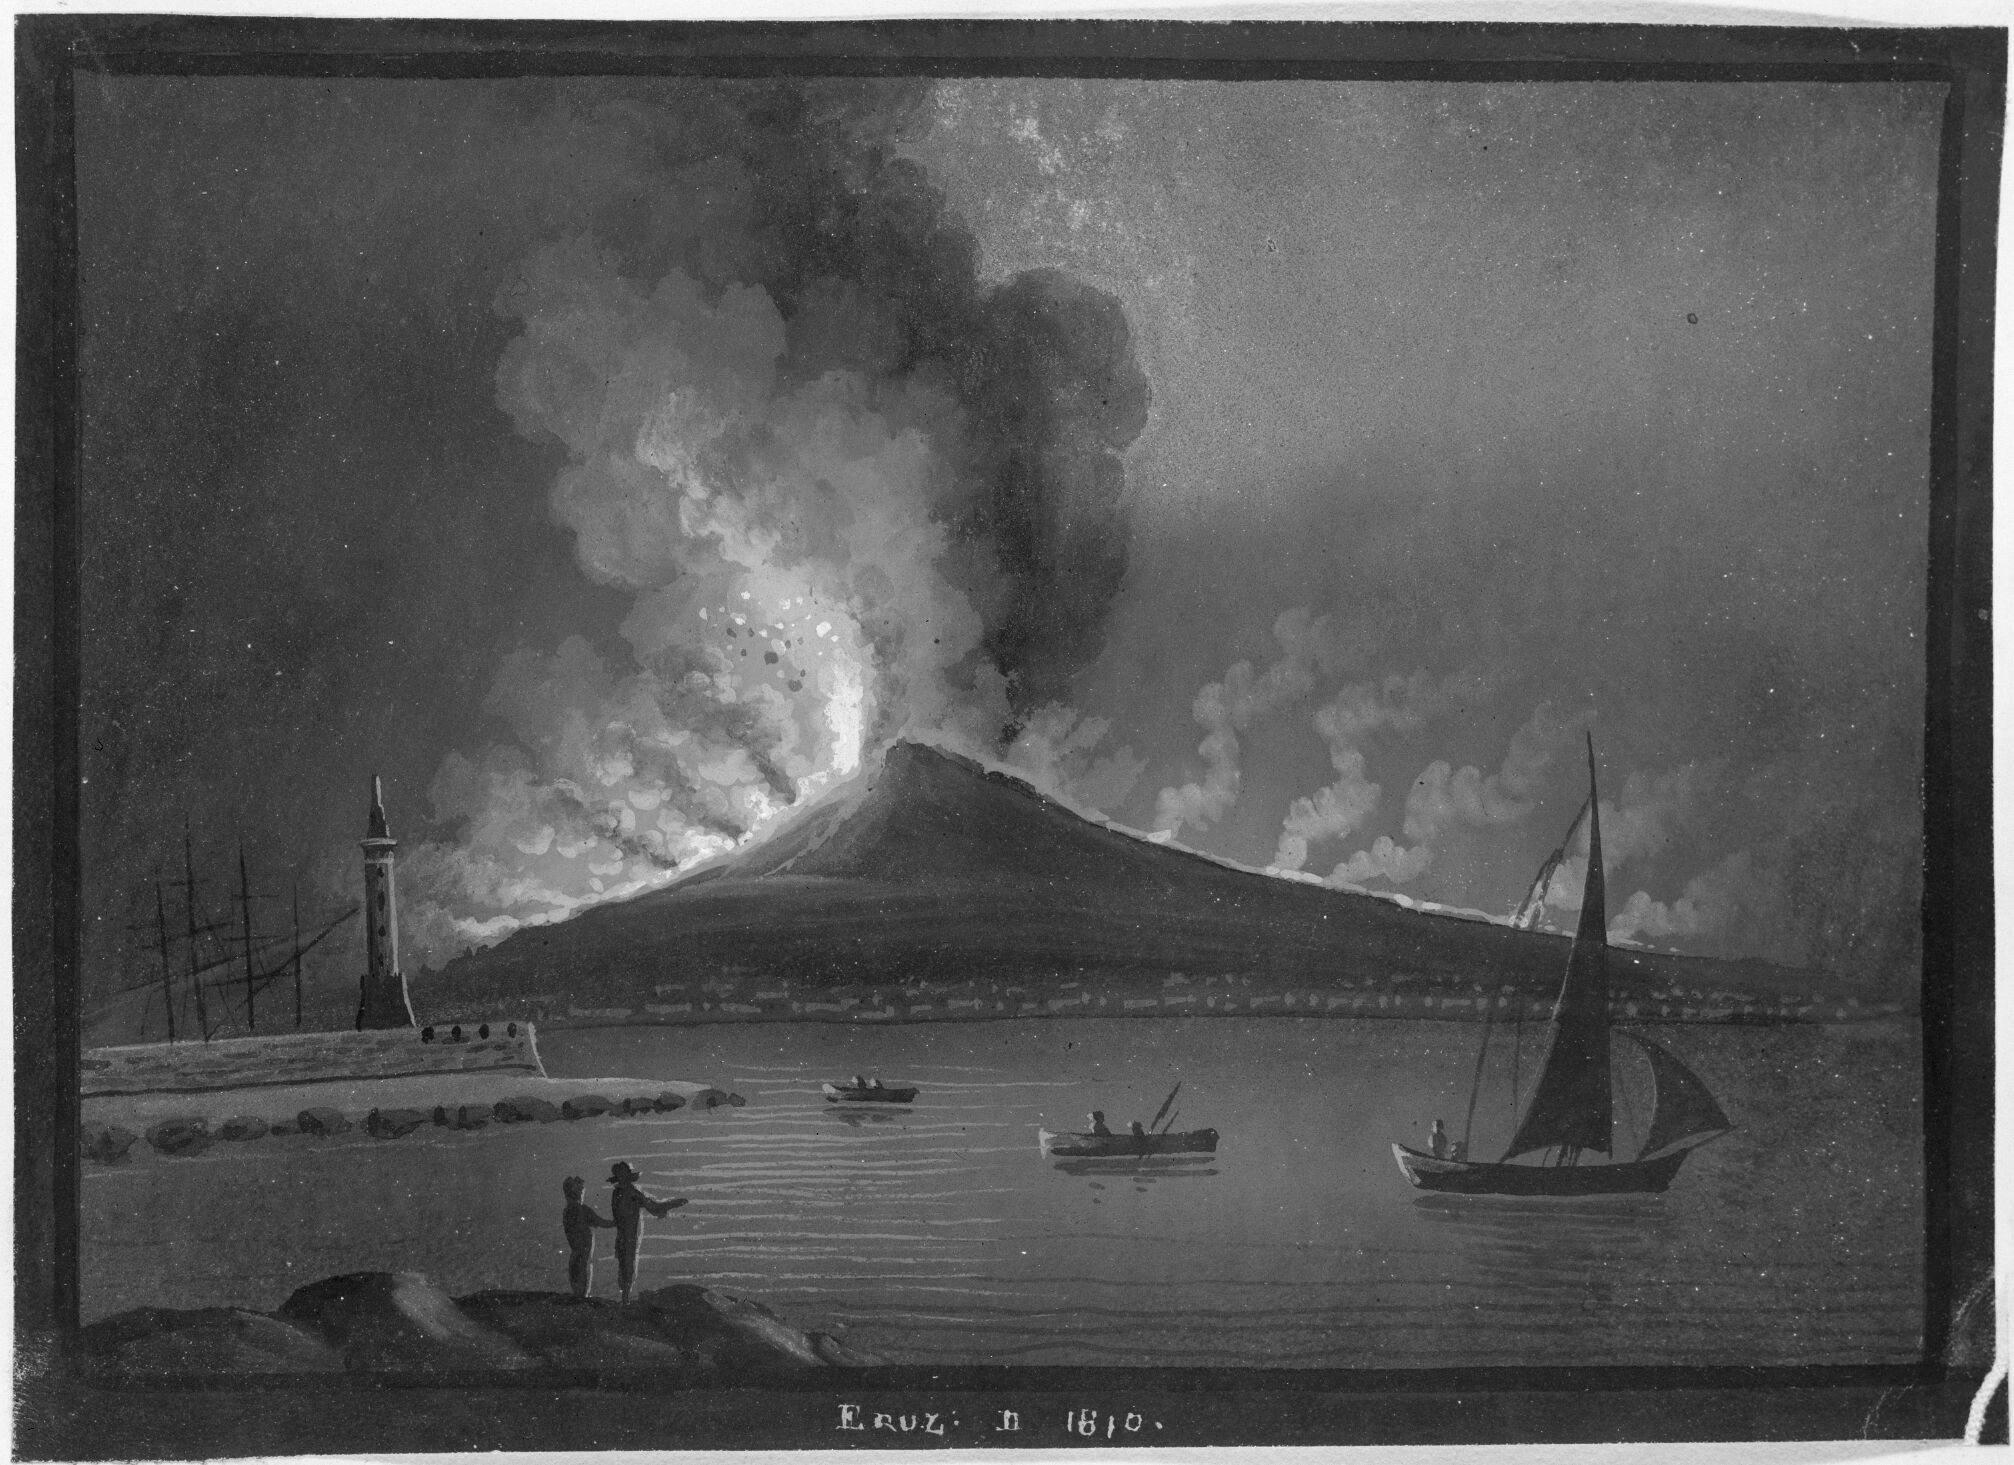 Eruption Of Vesuvius In 1810